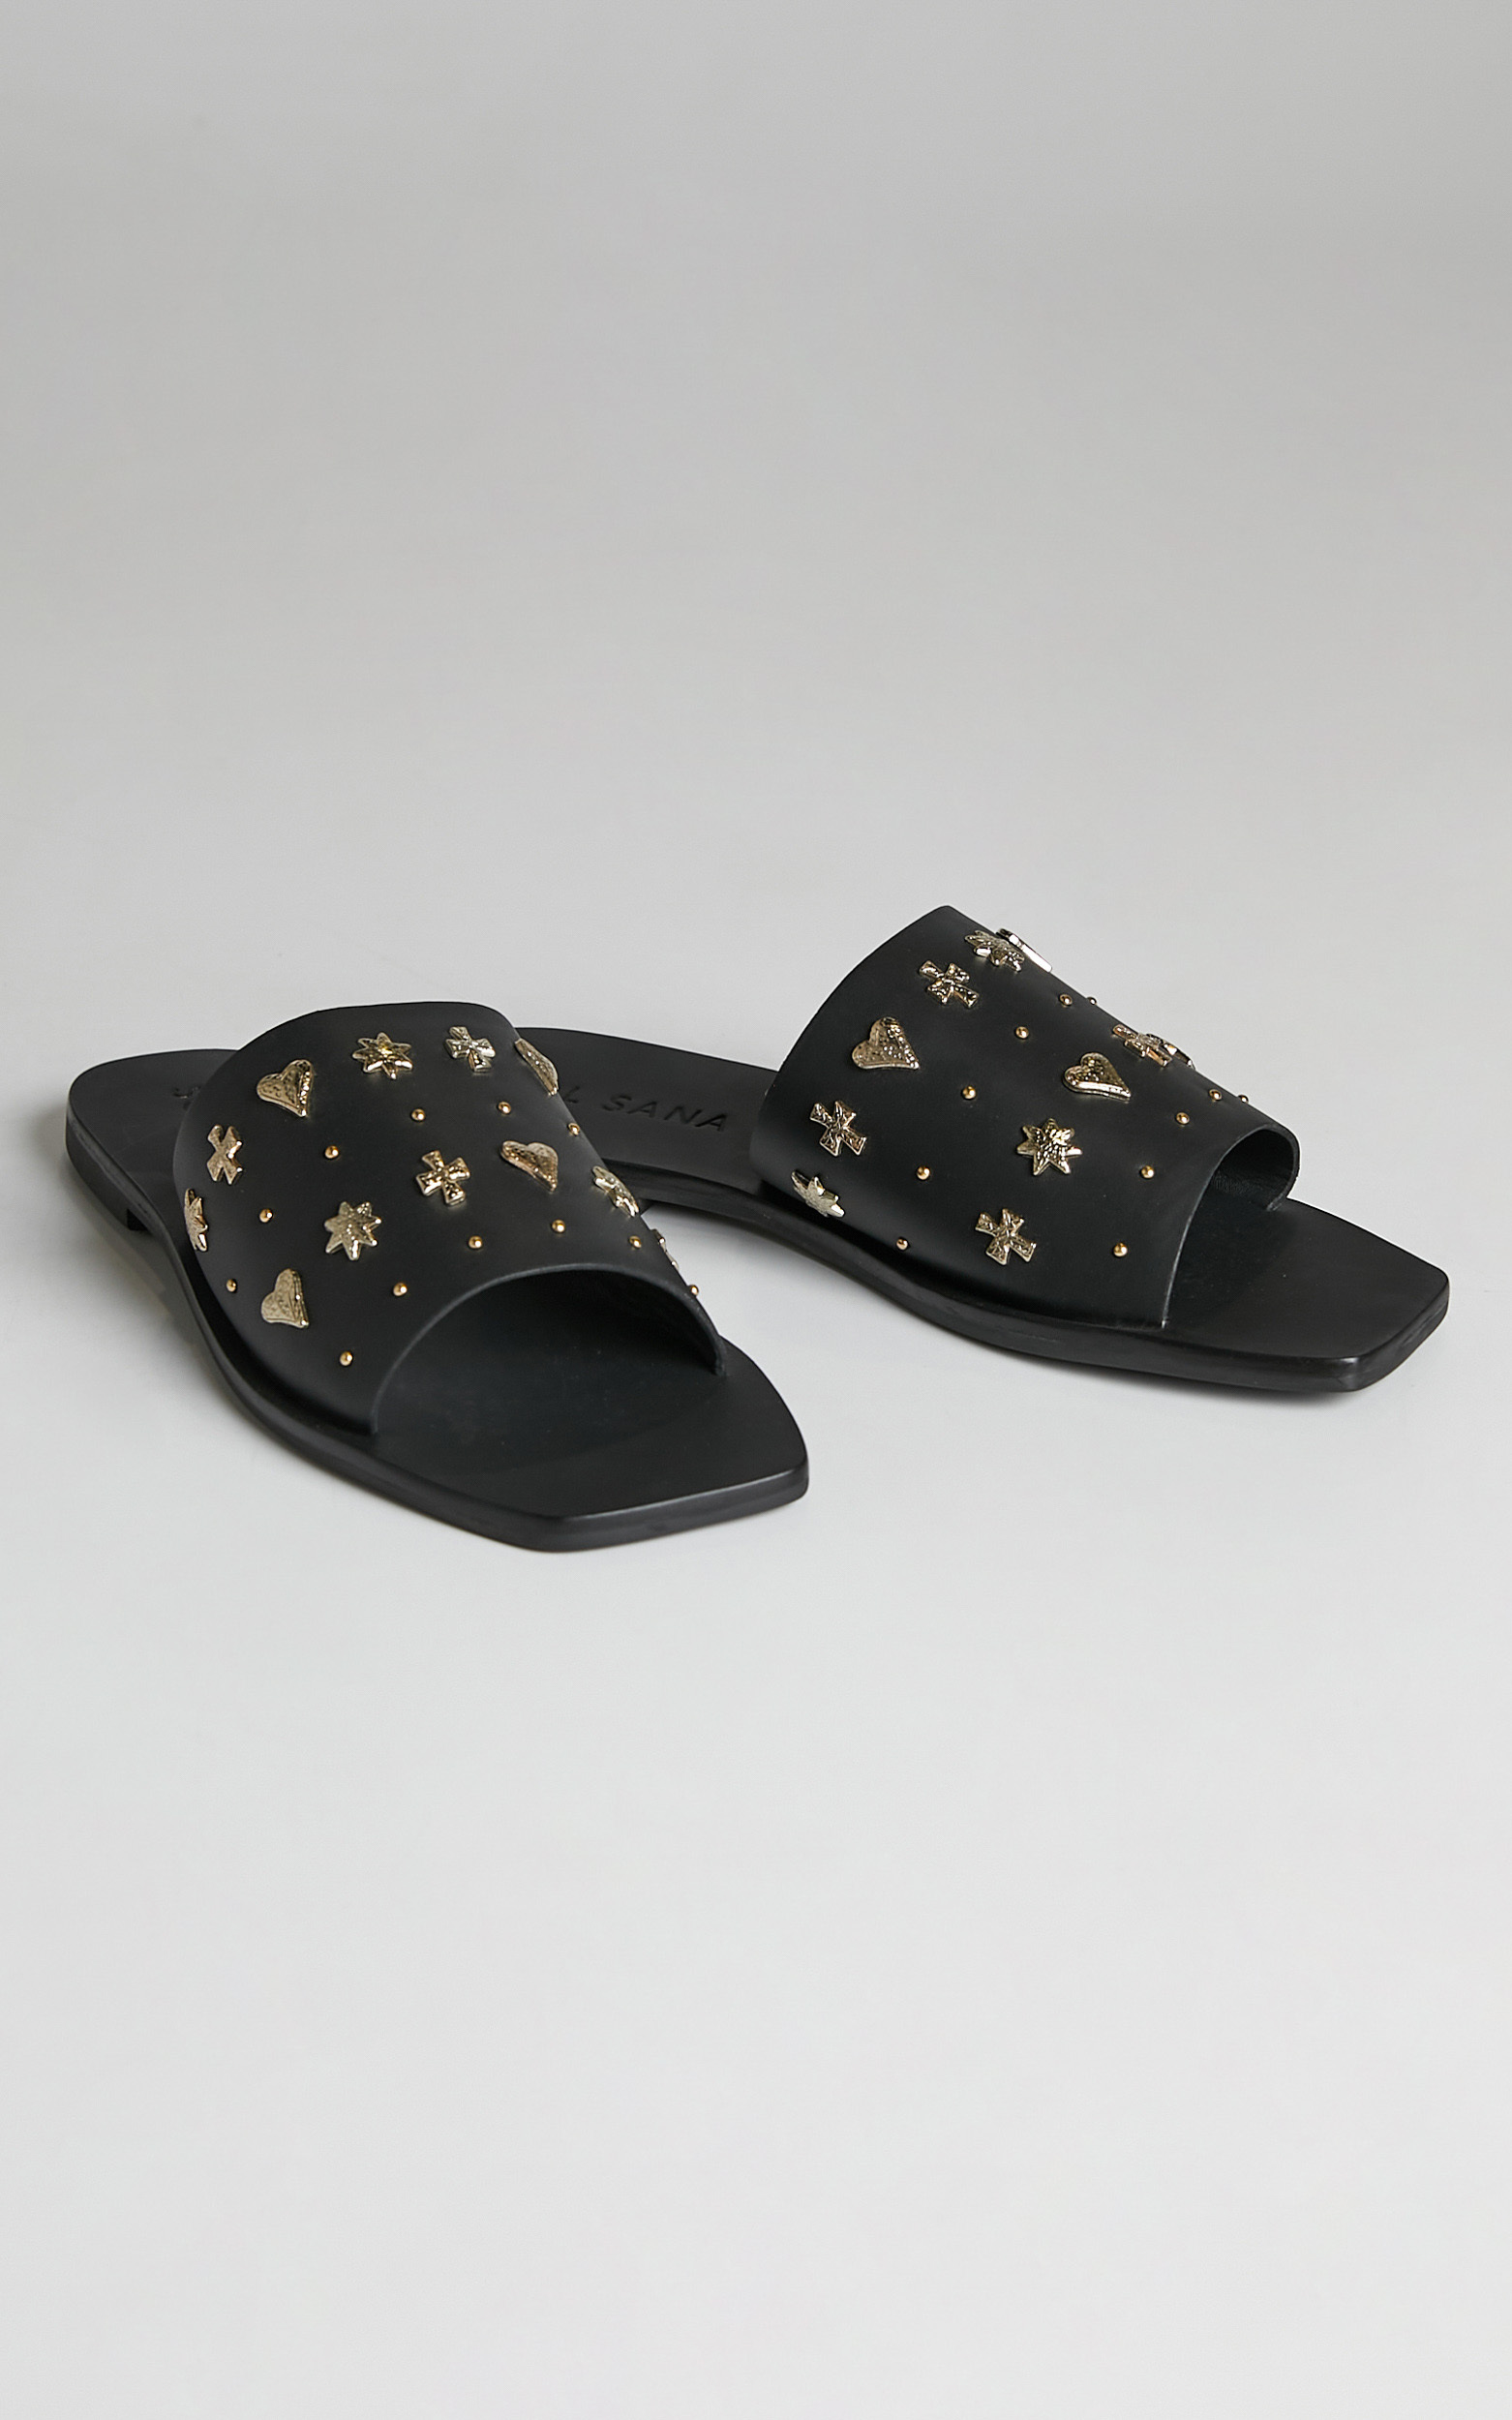 Sol Sana - Mila Slide Sandals in Black and Gold - 05, BLK1, hi-res image number null